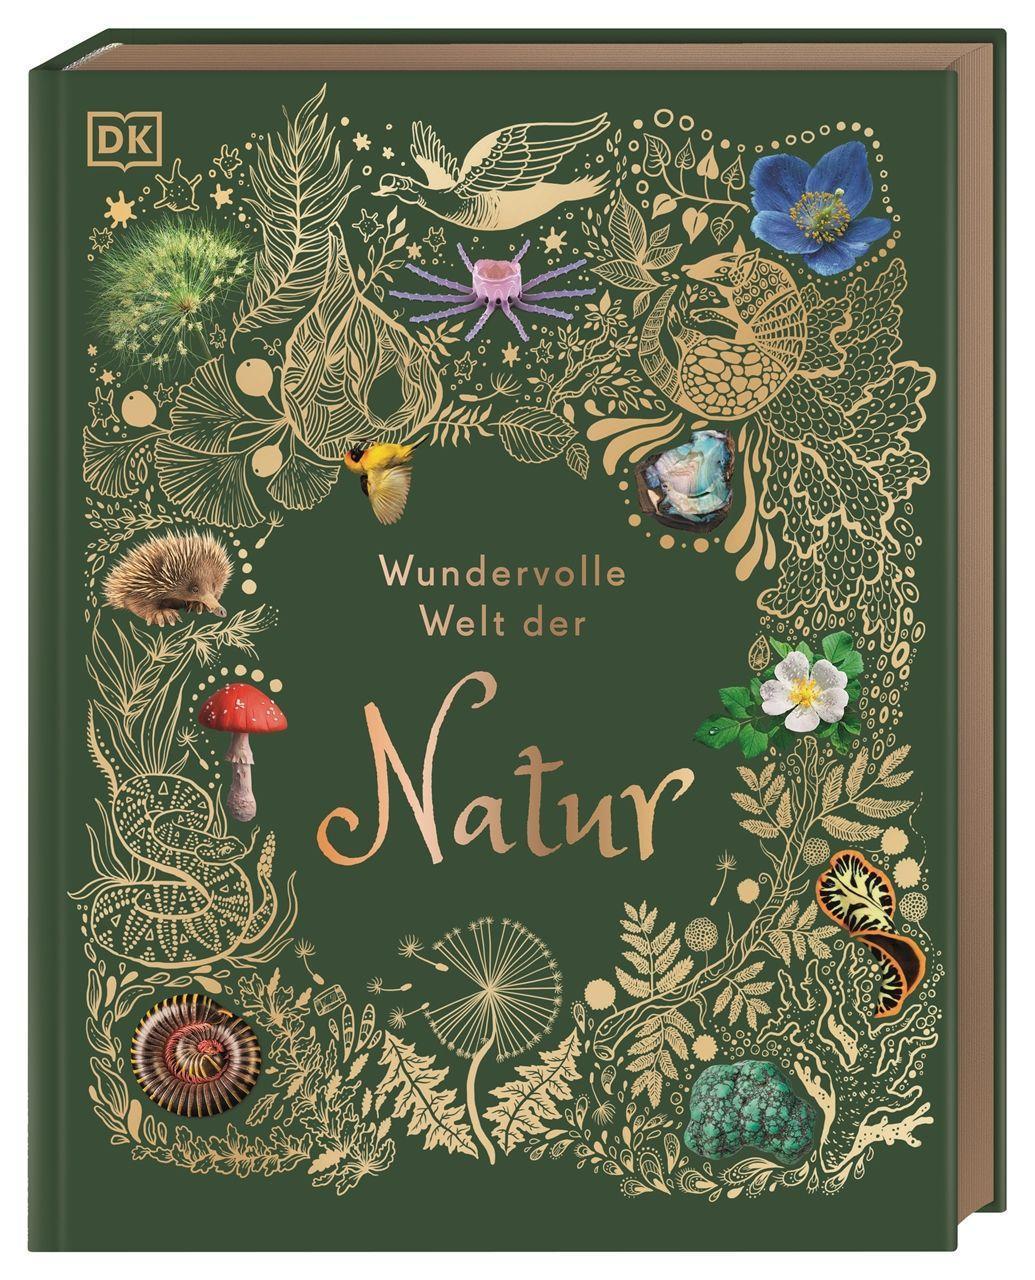 Wundervolle Welt der Natur: Ein Naturbilderbuch für die ganze Familie. Hochwertig ausgestattet mit Lesebändchen, Goldfolie und Goldschnitt